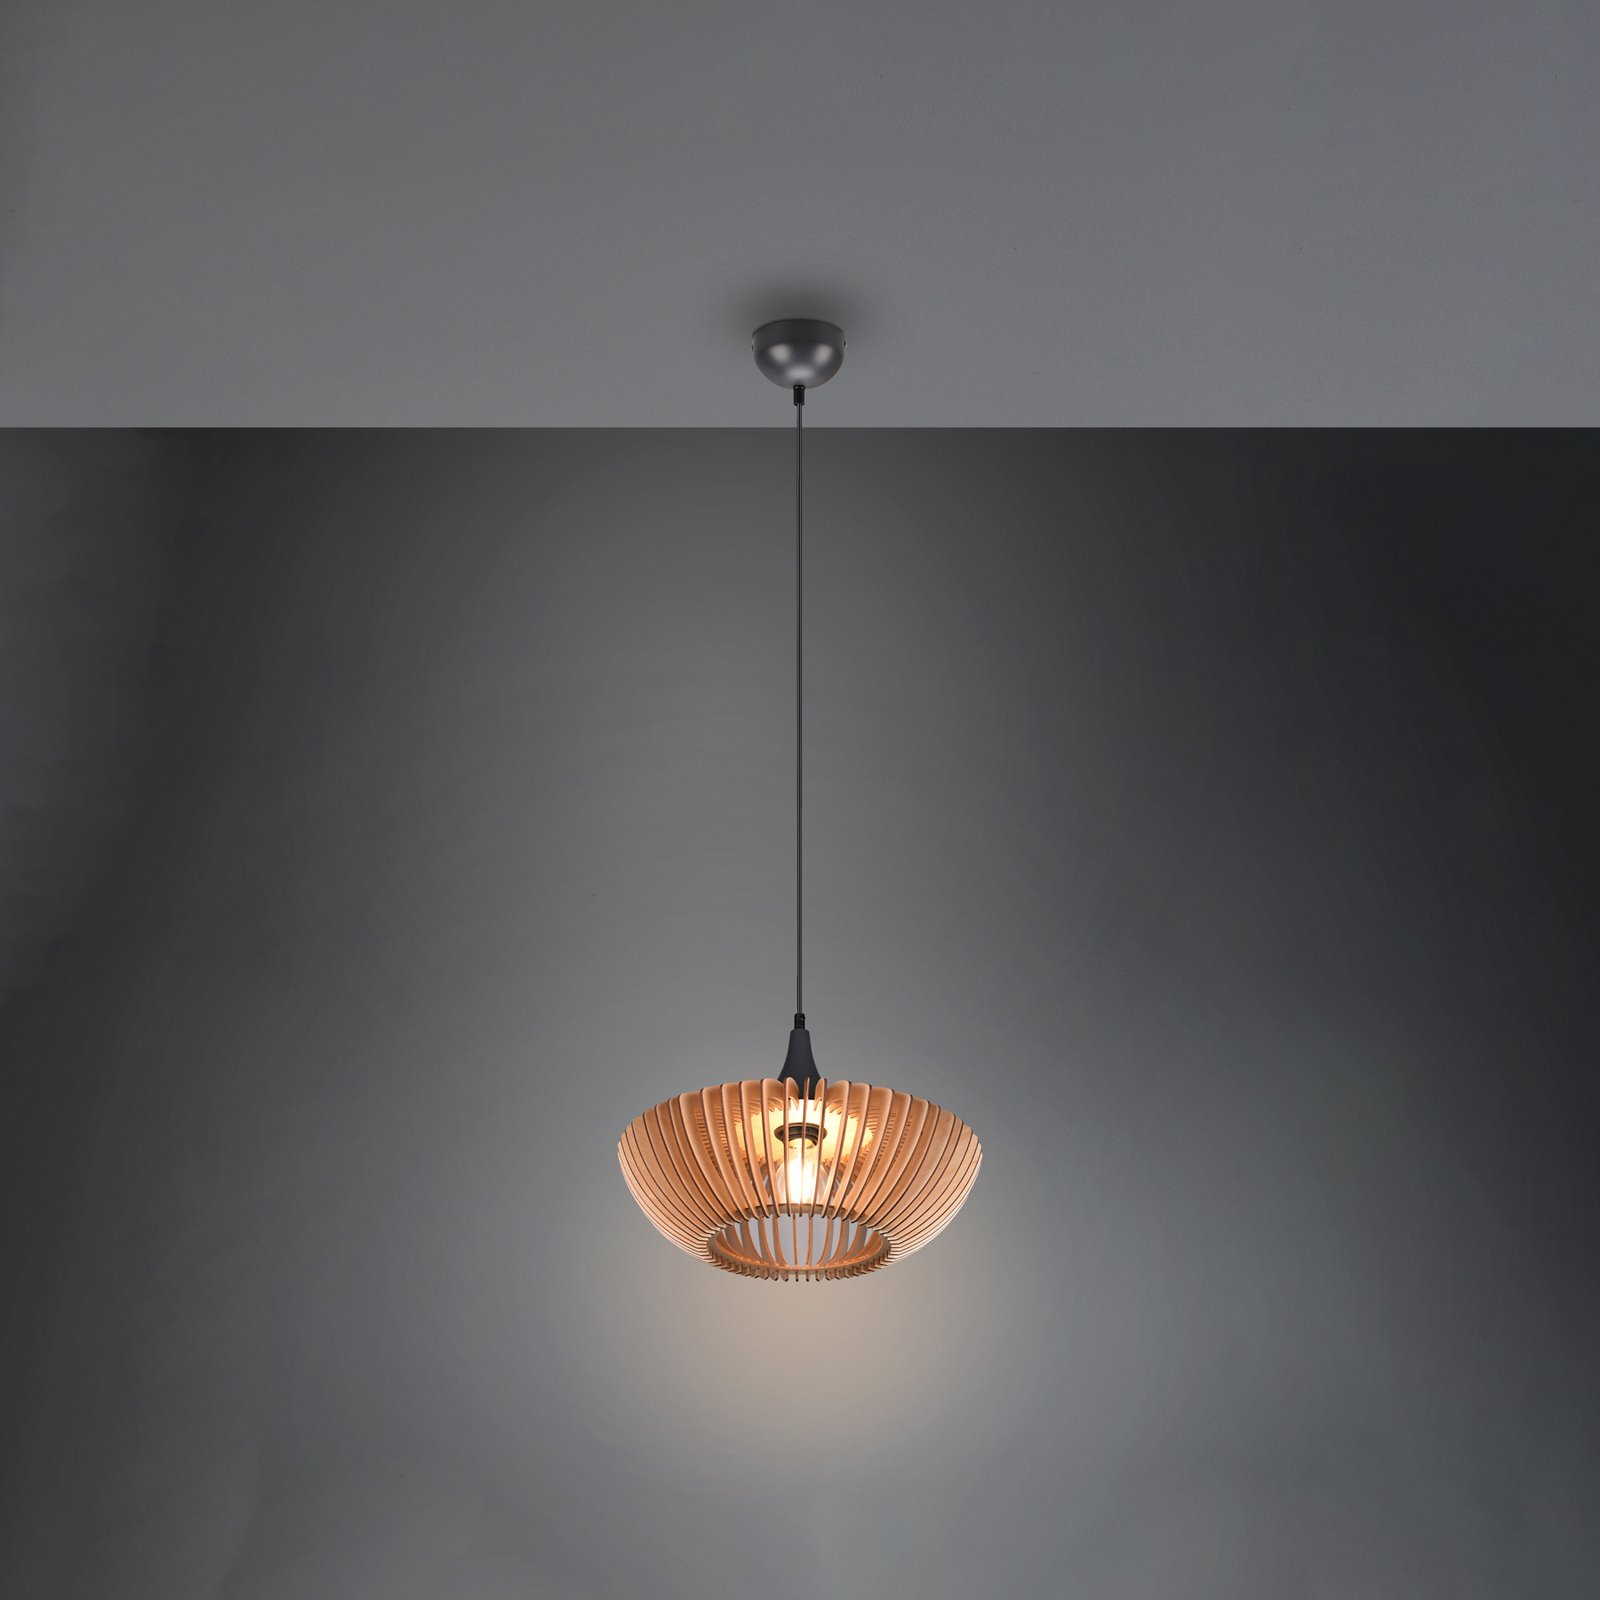 Hanglamp Colino van houtlamellen, hout licht